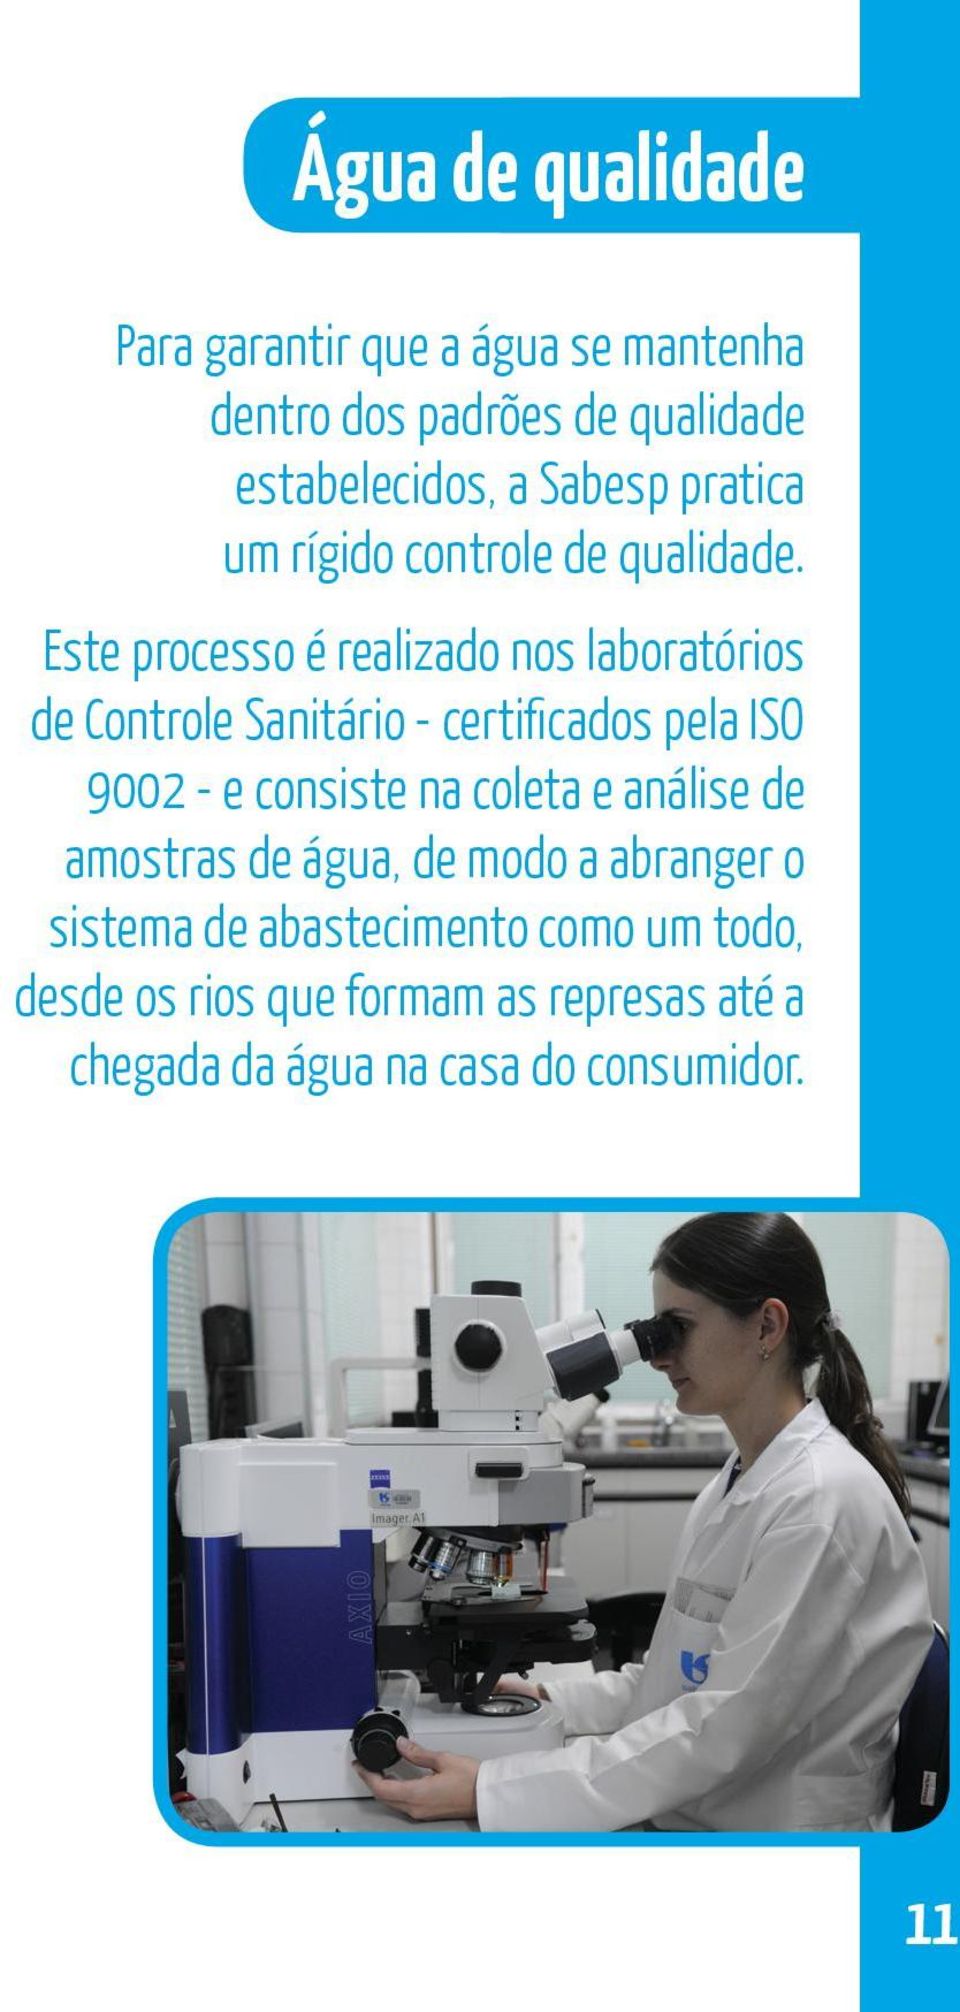 Este processo é realizado nos laboratórios de Controle Sanitário - certificados pela ISO 9002 - e consiste na